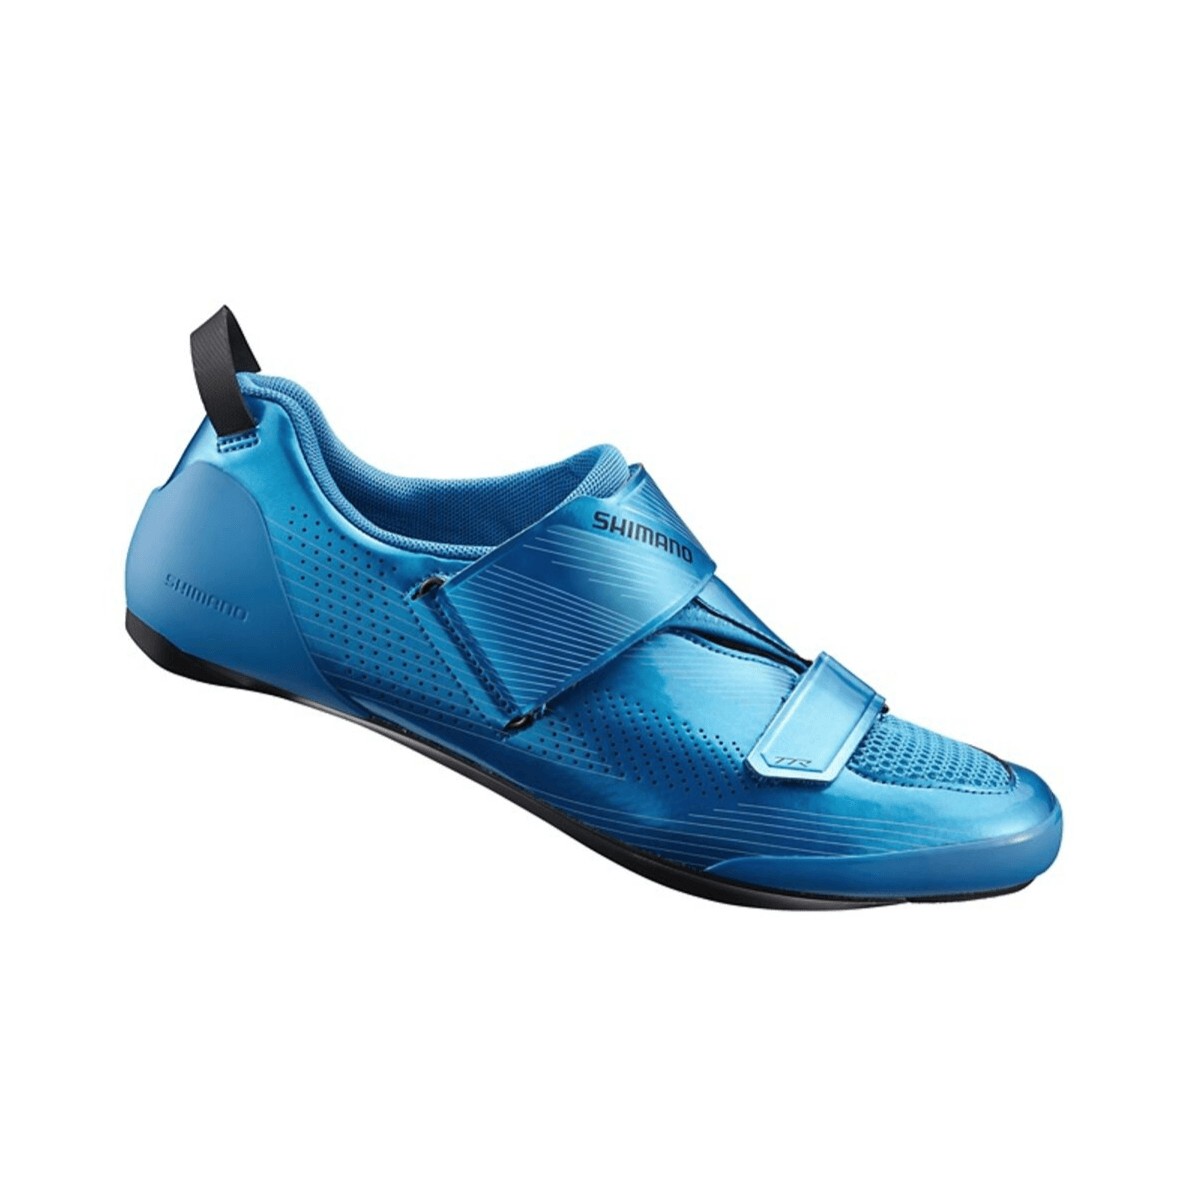 Shimano TR9 Triathlonschuhe blau, Größe 42,5 - EUR